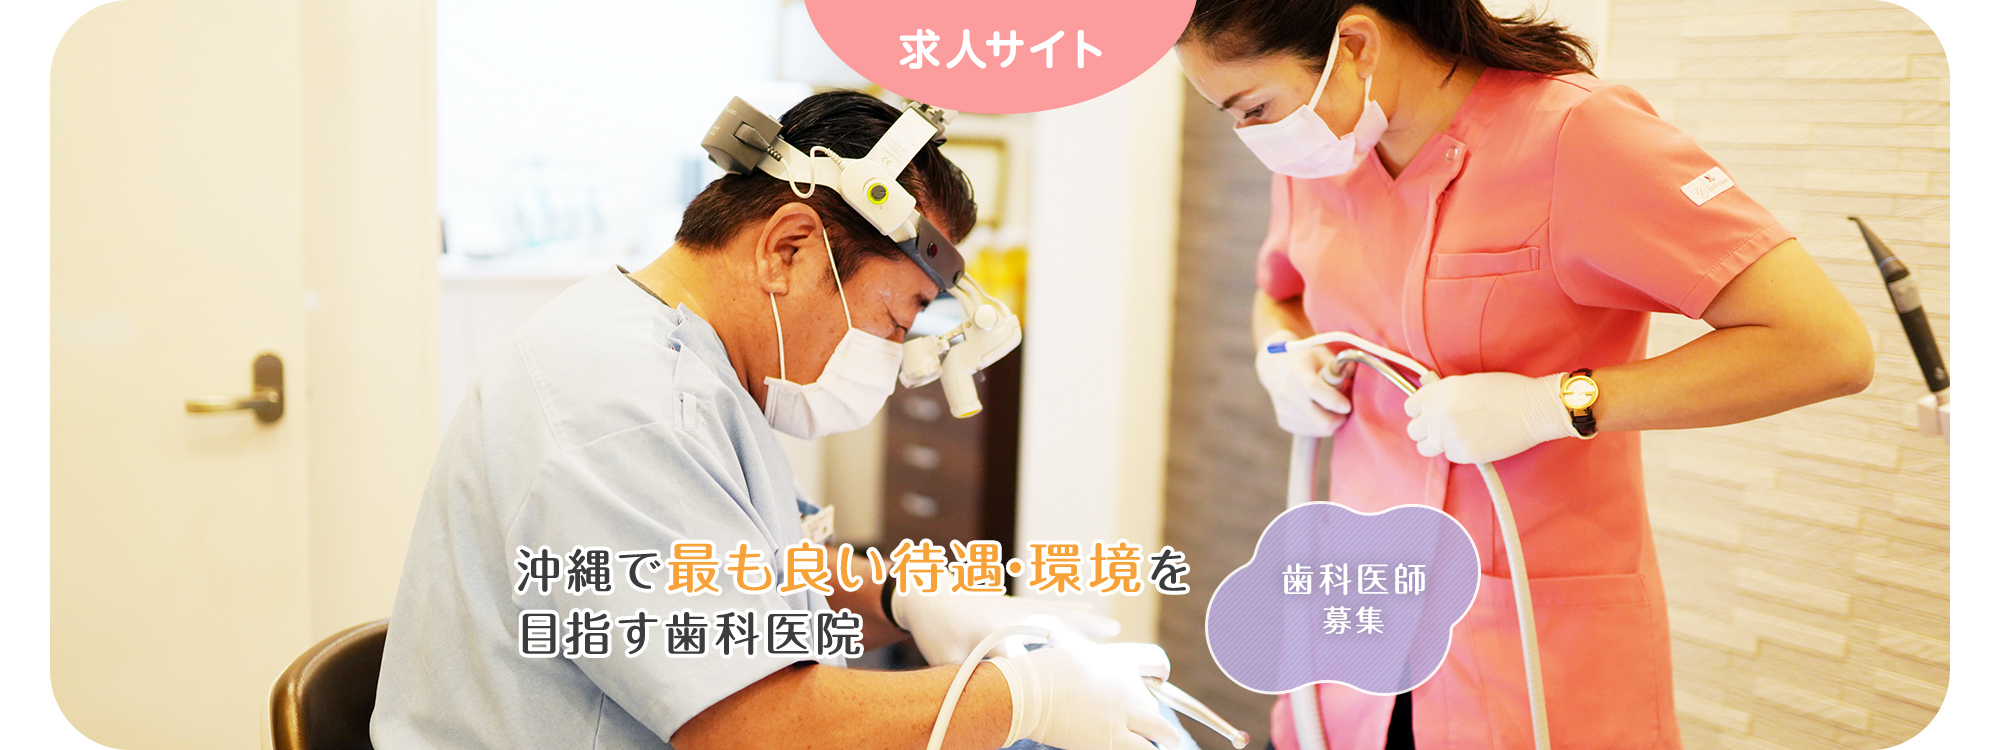 沖縄で最も良い待遇・環境を 目指す歯科医院 歯科医師 募集